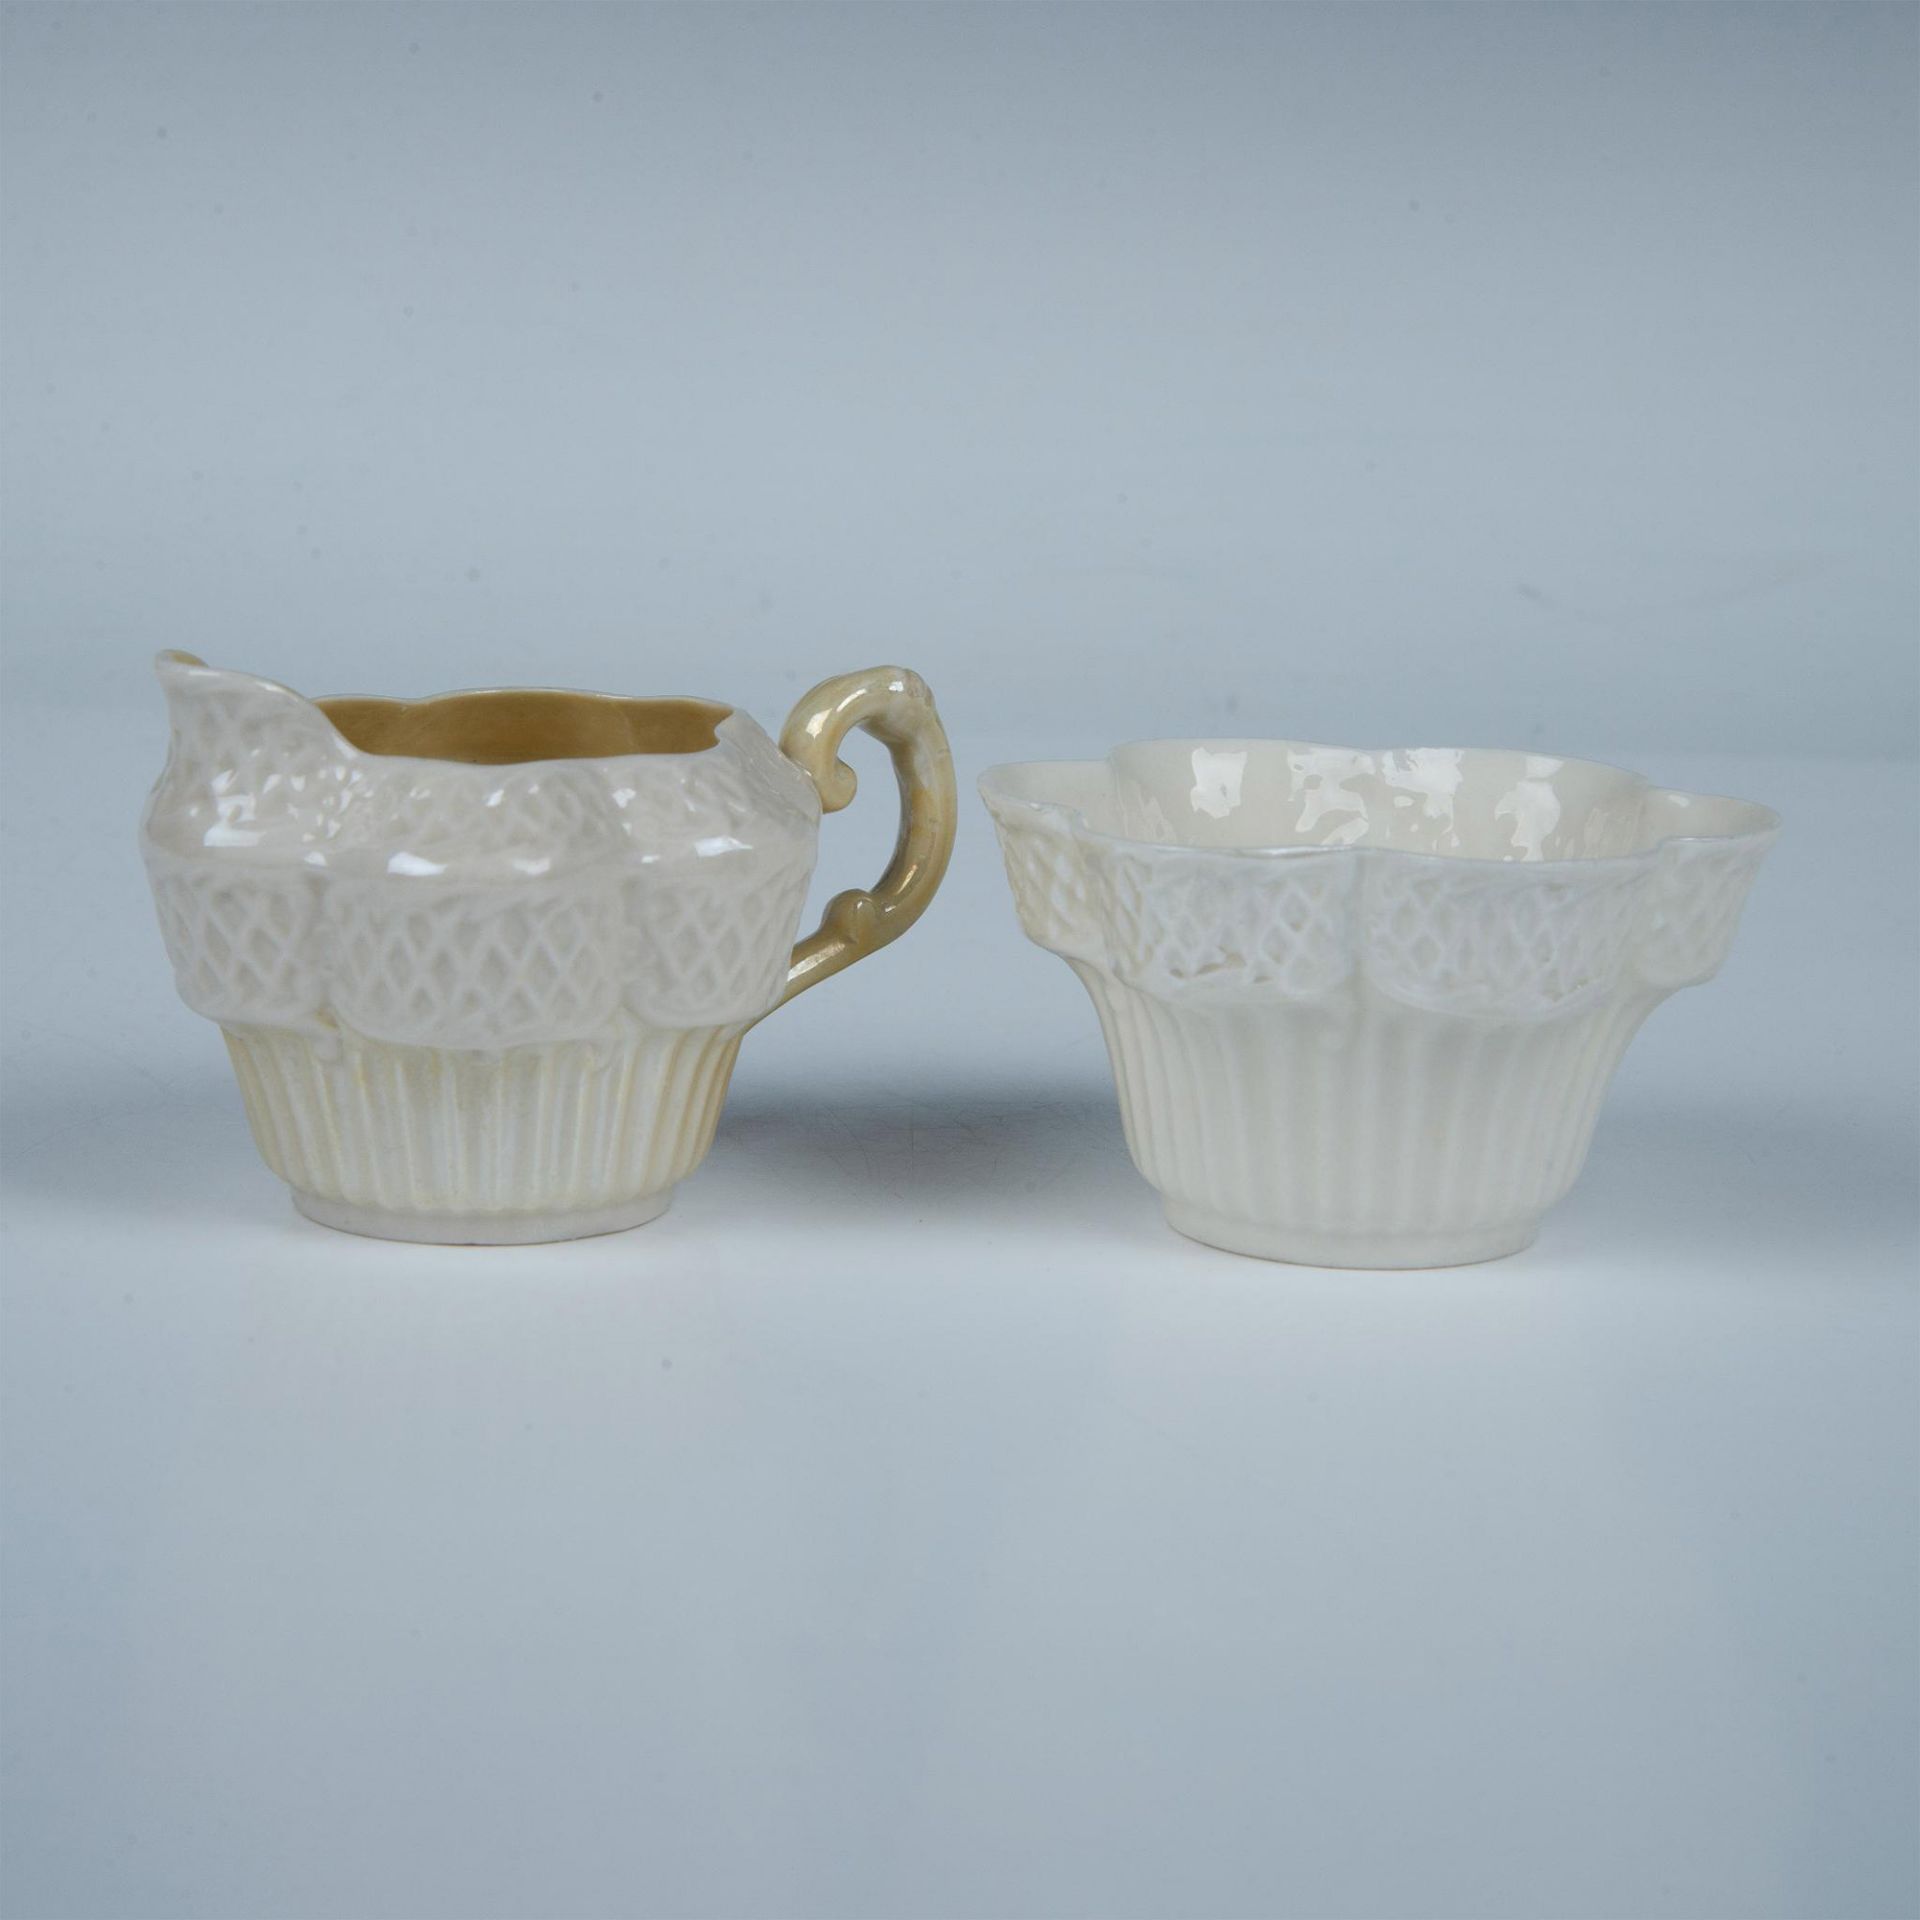 2pc Belleek Porcelain Sugar Bowl and Creamer, Erne